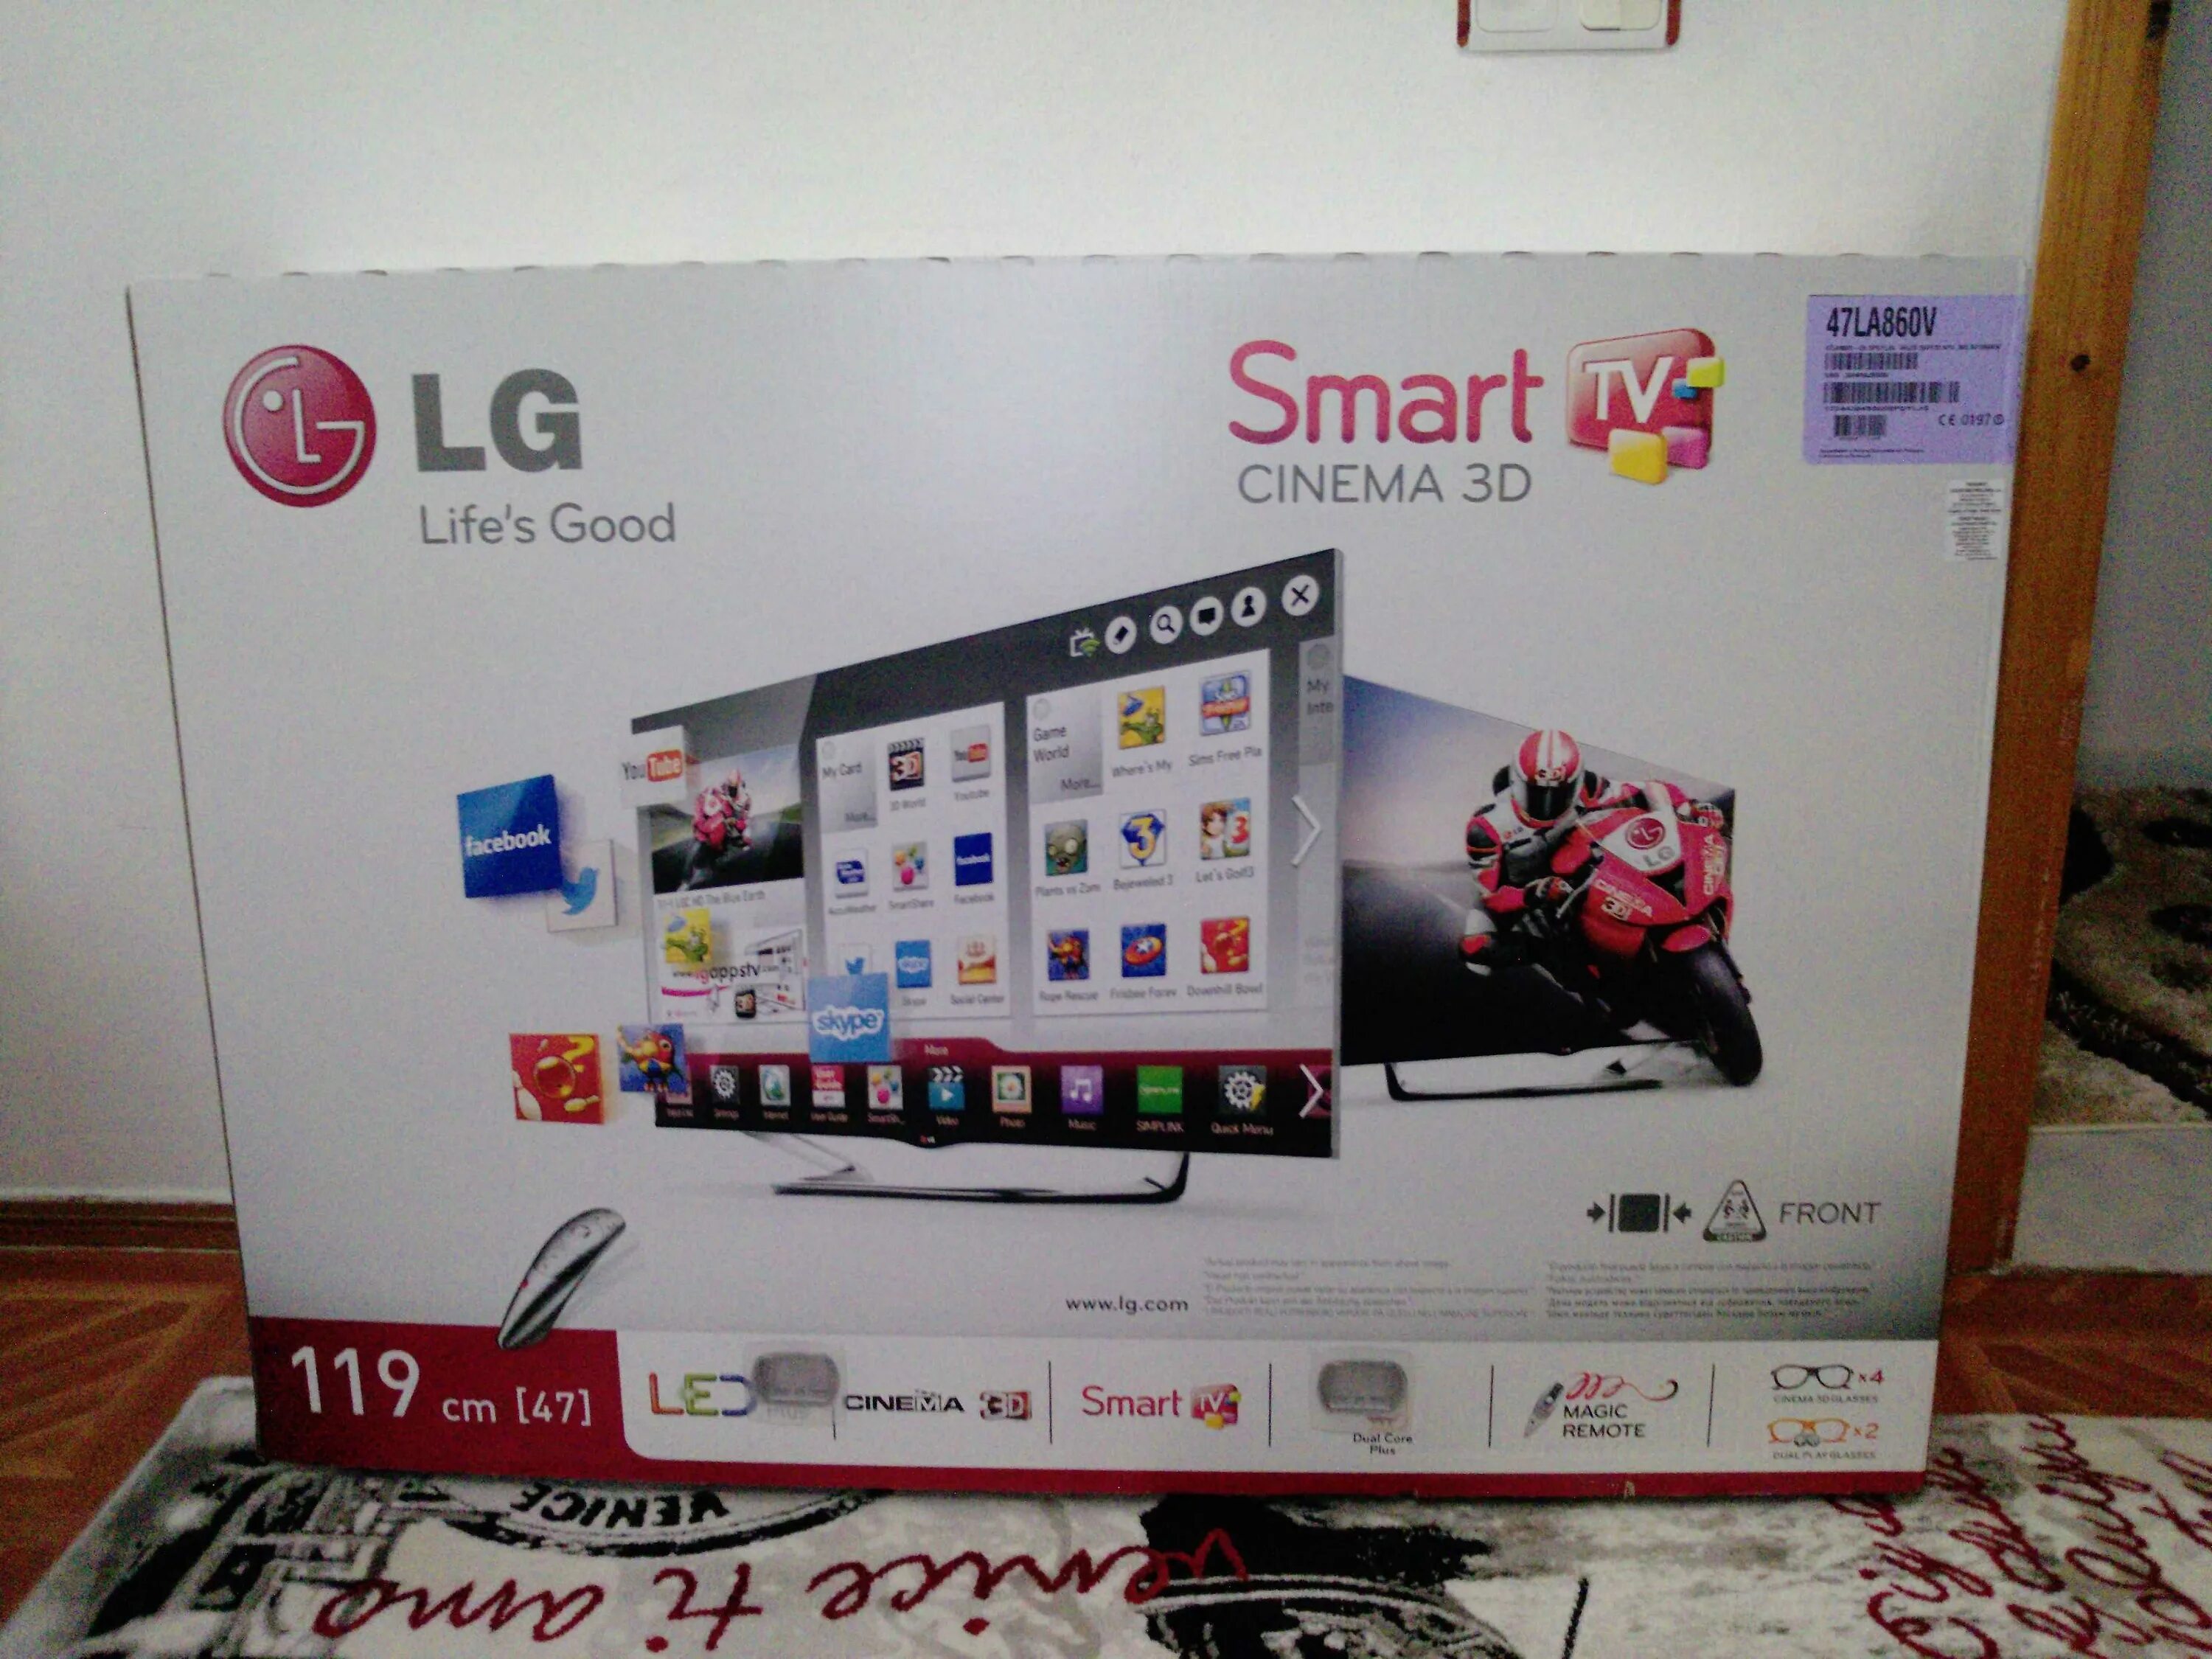 Телевизор LG 47la960v 47". LG Smart TV 2013 года. Телевизор LG 47la667v 47". Телевизор LG Smart TV 2013 года. Телевизоры lg 2013 года